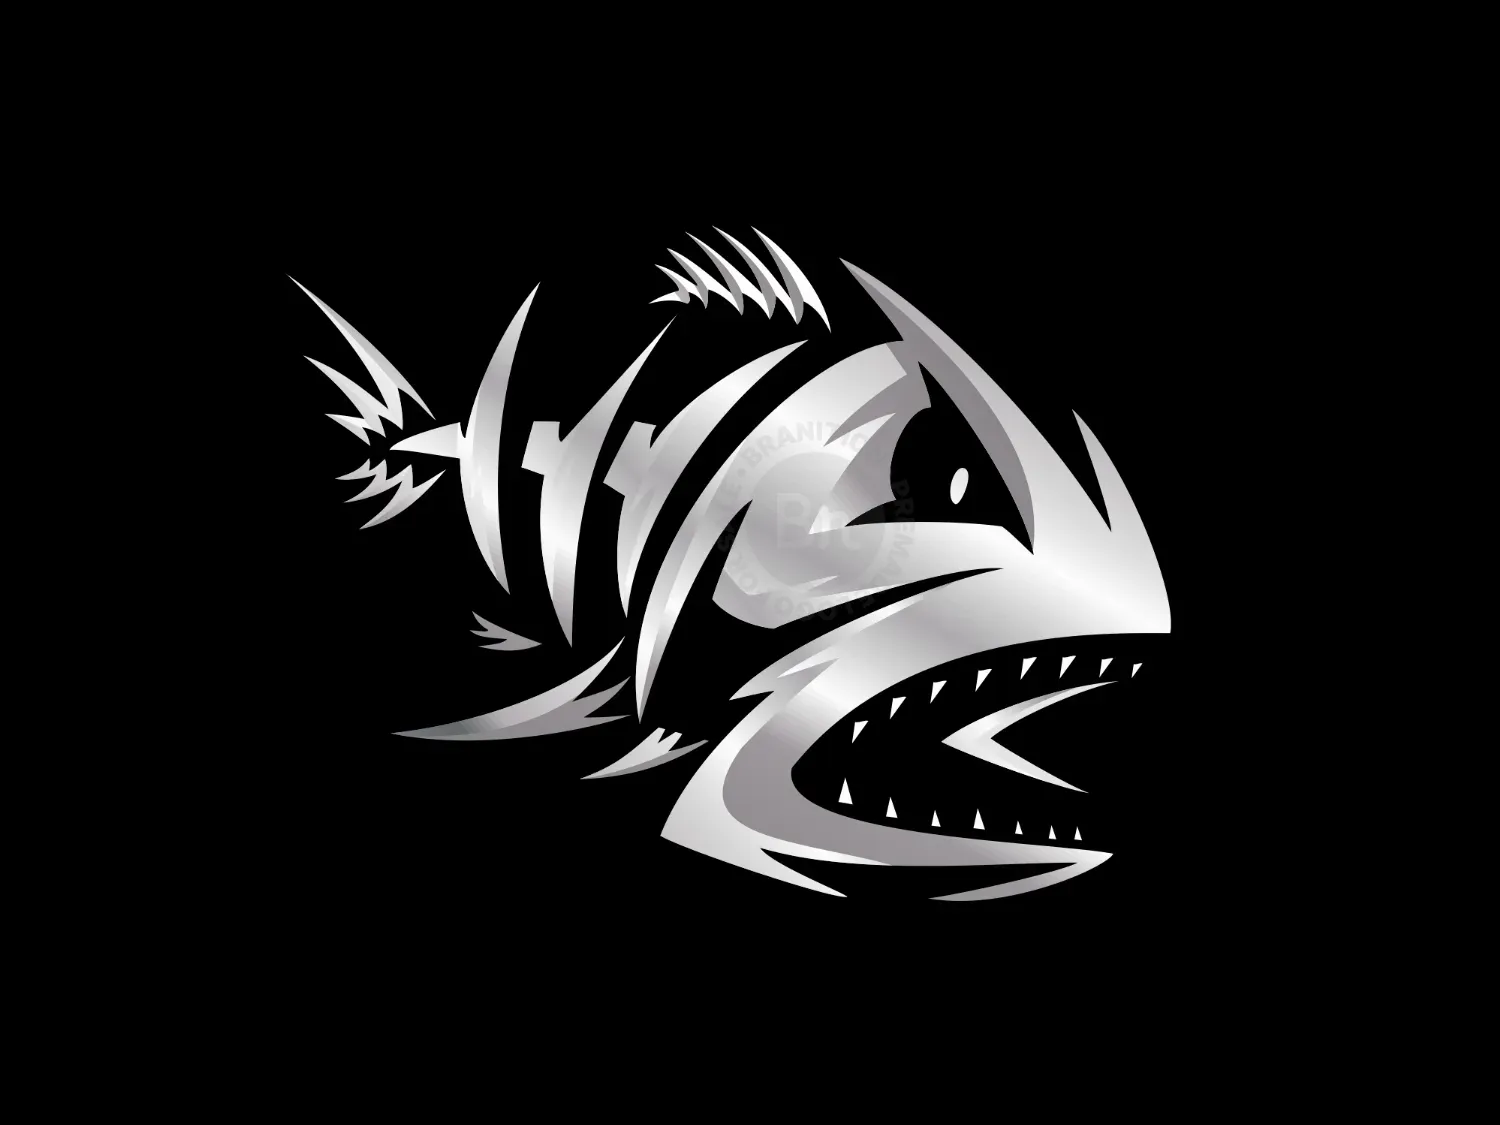 Skeleton Fish Team Logo - Branition